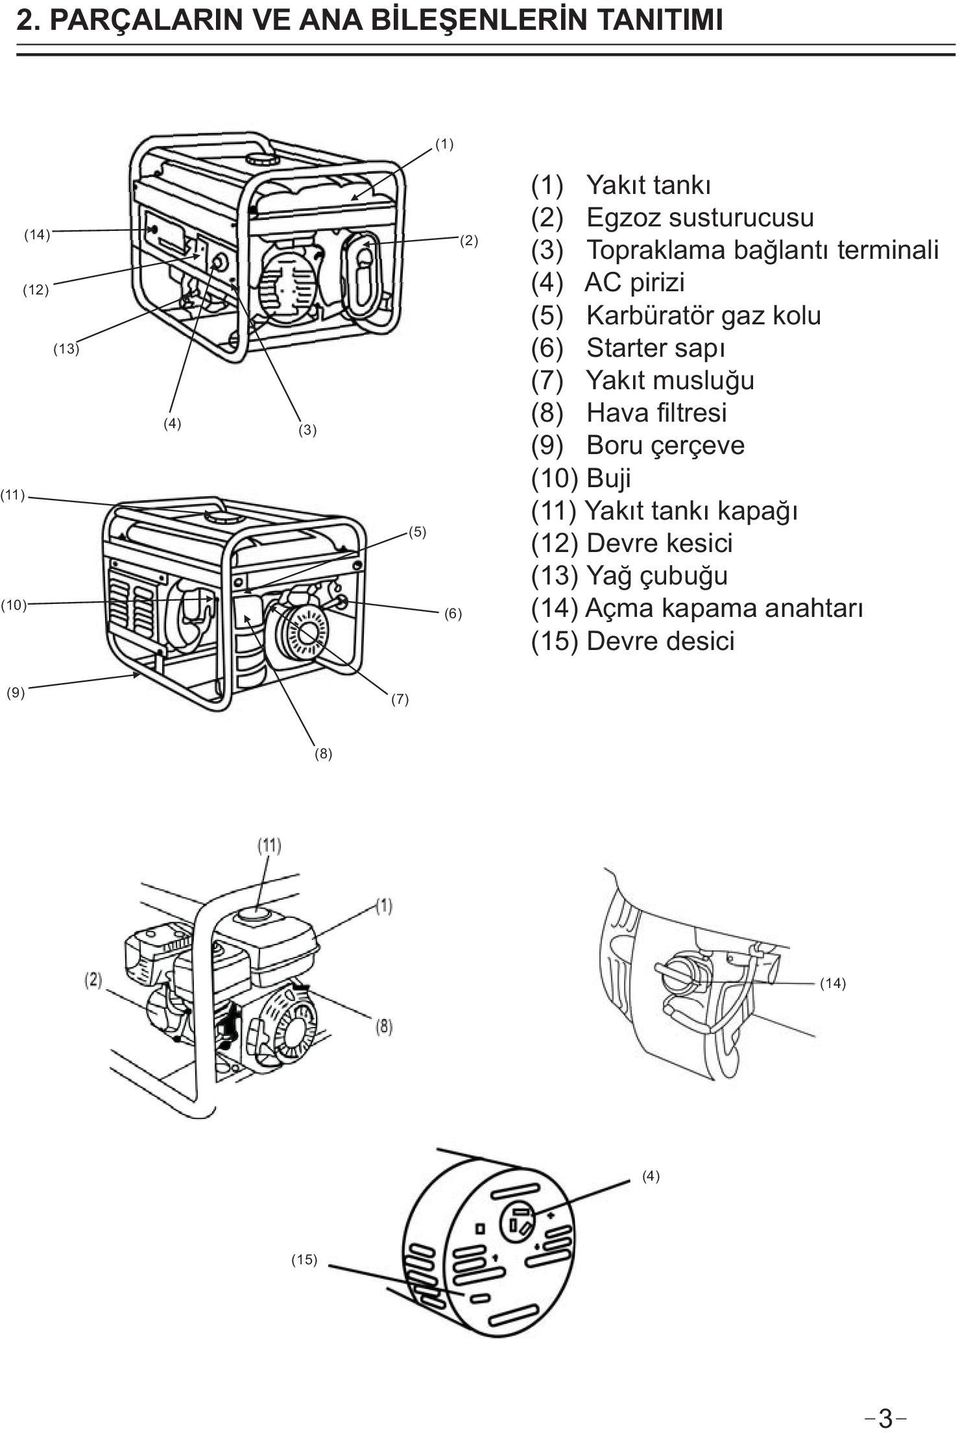 (6) Starter sapı ( 7) Yakıt musluğu ( 8) Hava filtresi (9) Boru çerçeve (10) Buji (11) Yakıt tankı